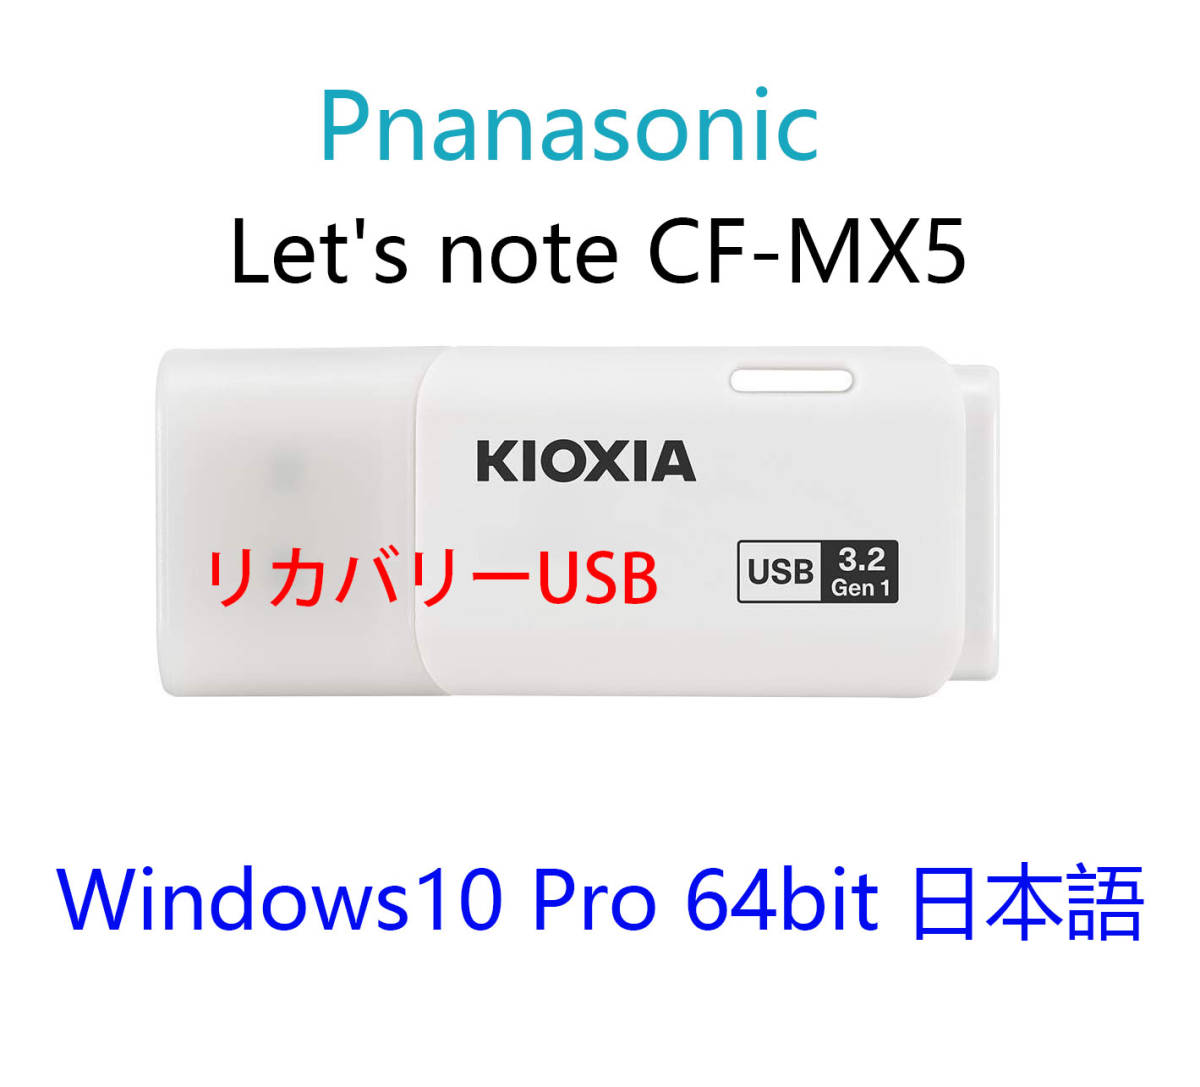 Panasonic Let\'s note CF-MX5 для Win 10 Pro 64bit USB восстановление носитель информации первый период .( завод отгрузка час. состояние ) порядок документы 